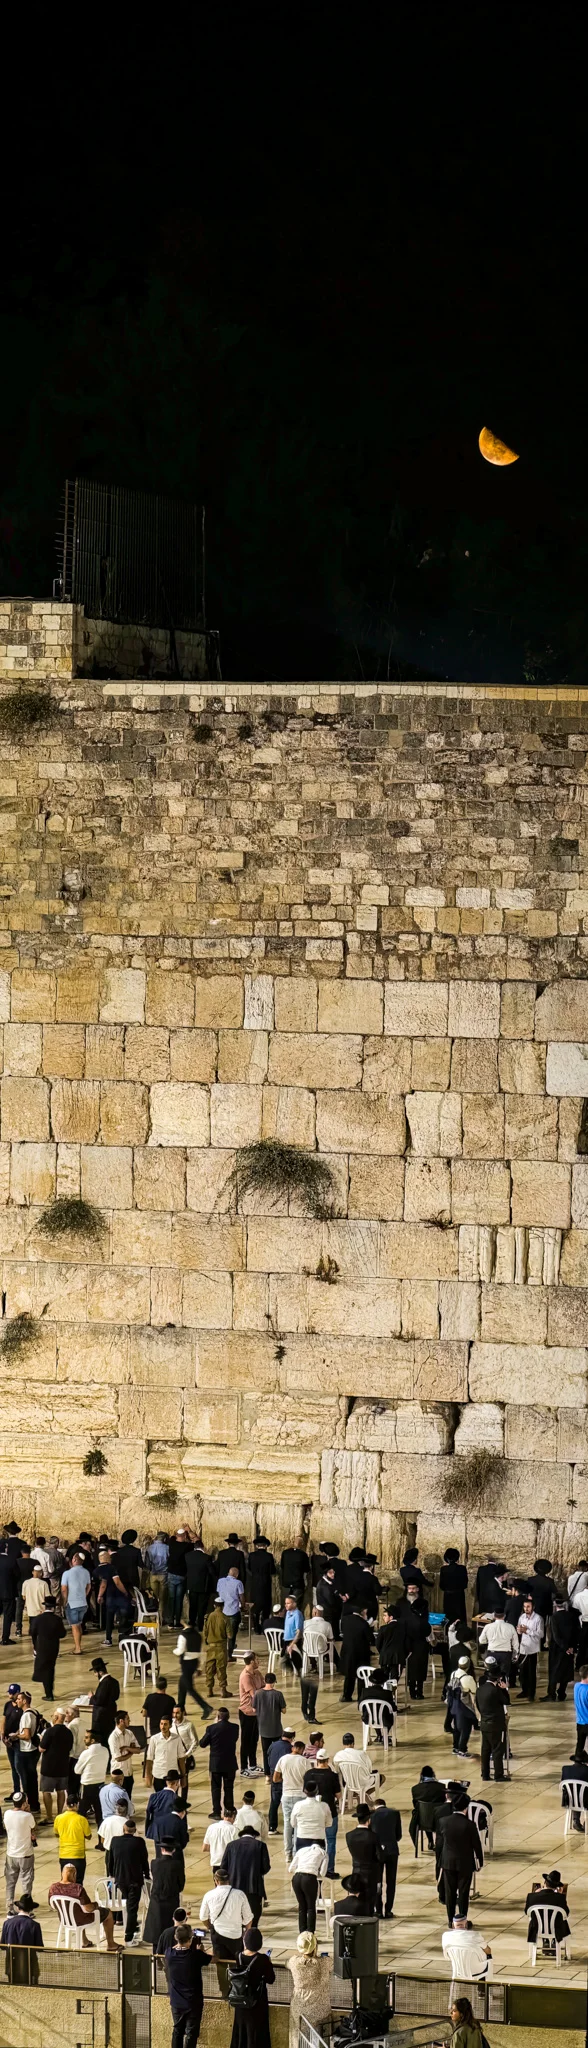 אנשים מתפללים בכותל עם סהר הירח תלוי בשמים האפלים מעל ירושלים.